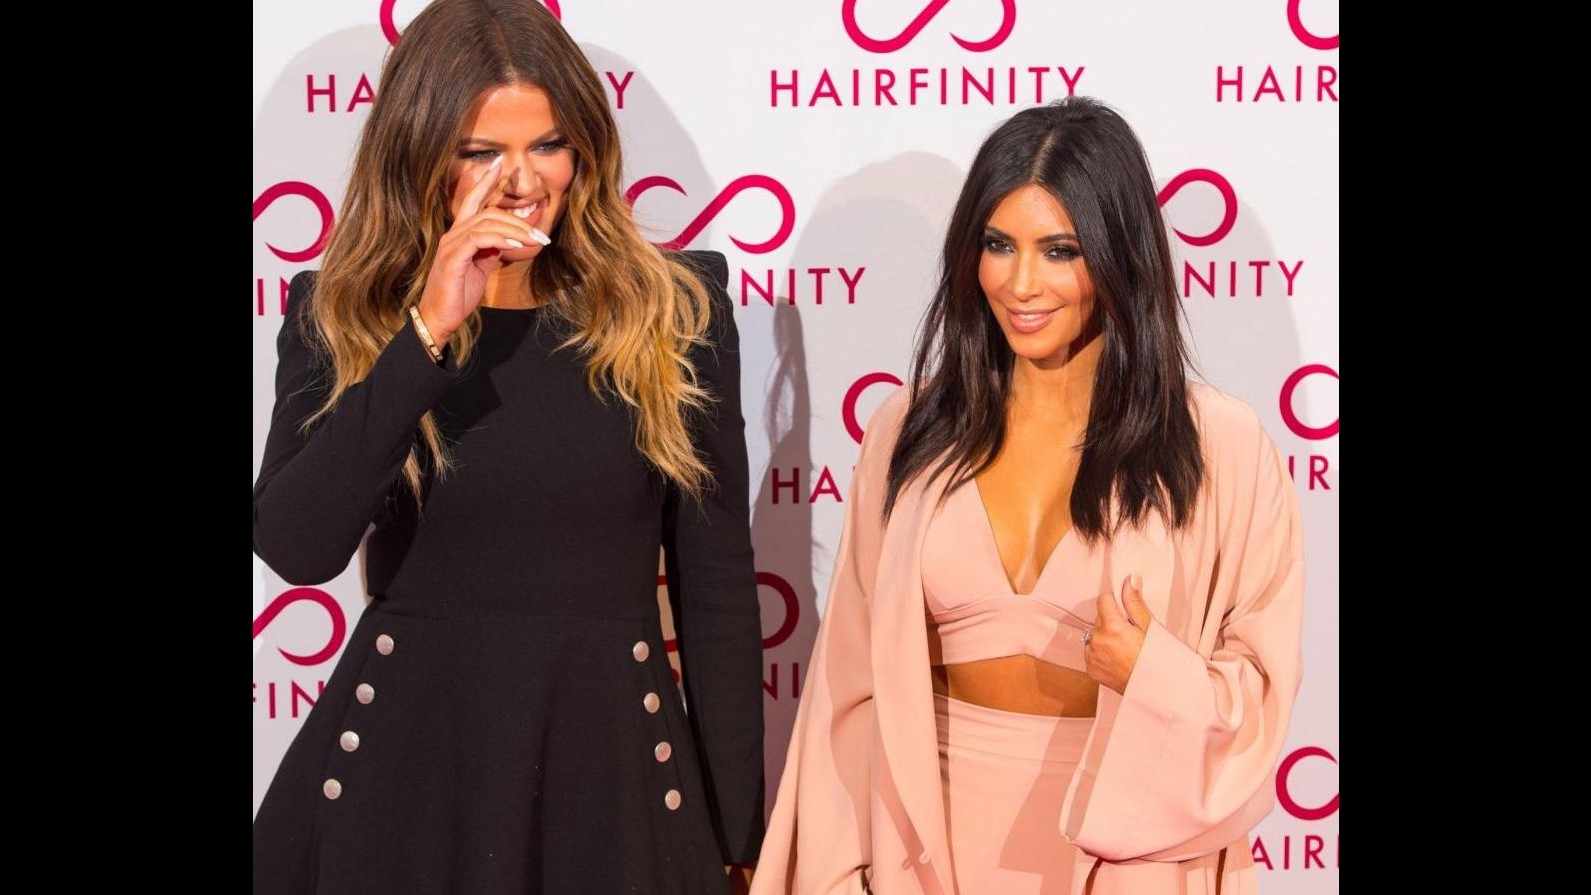 Tappeto rosso o competizione? Gara di stile tra Kim e Khloe Kardashian